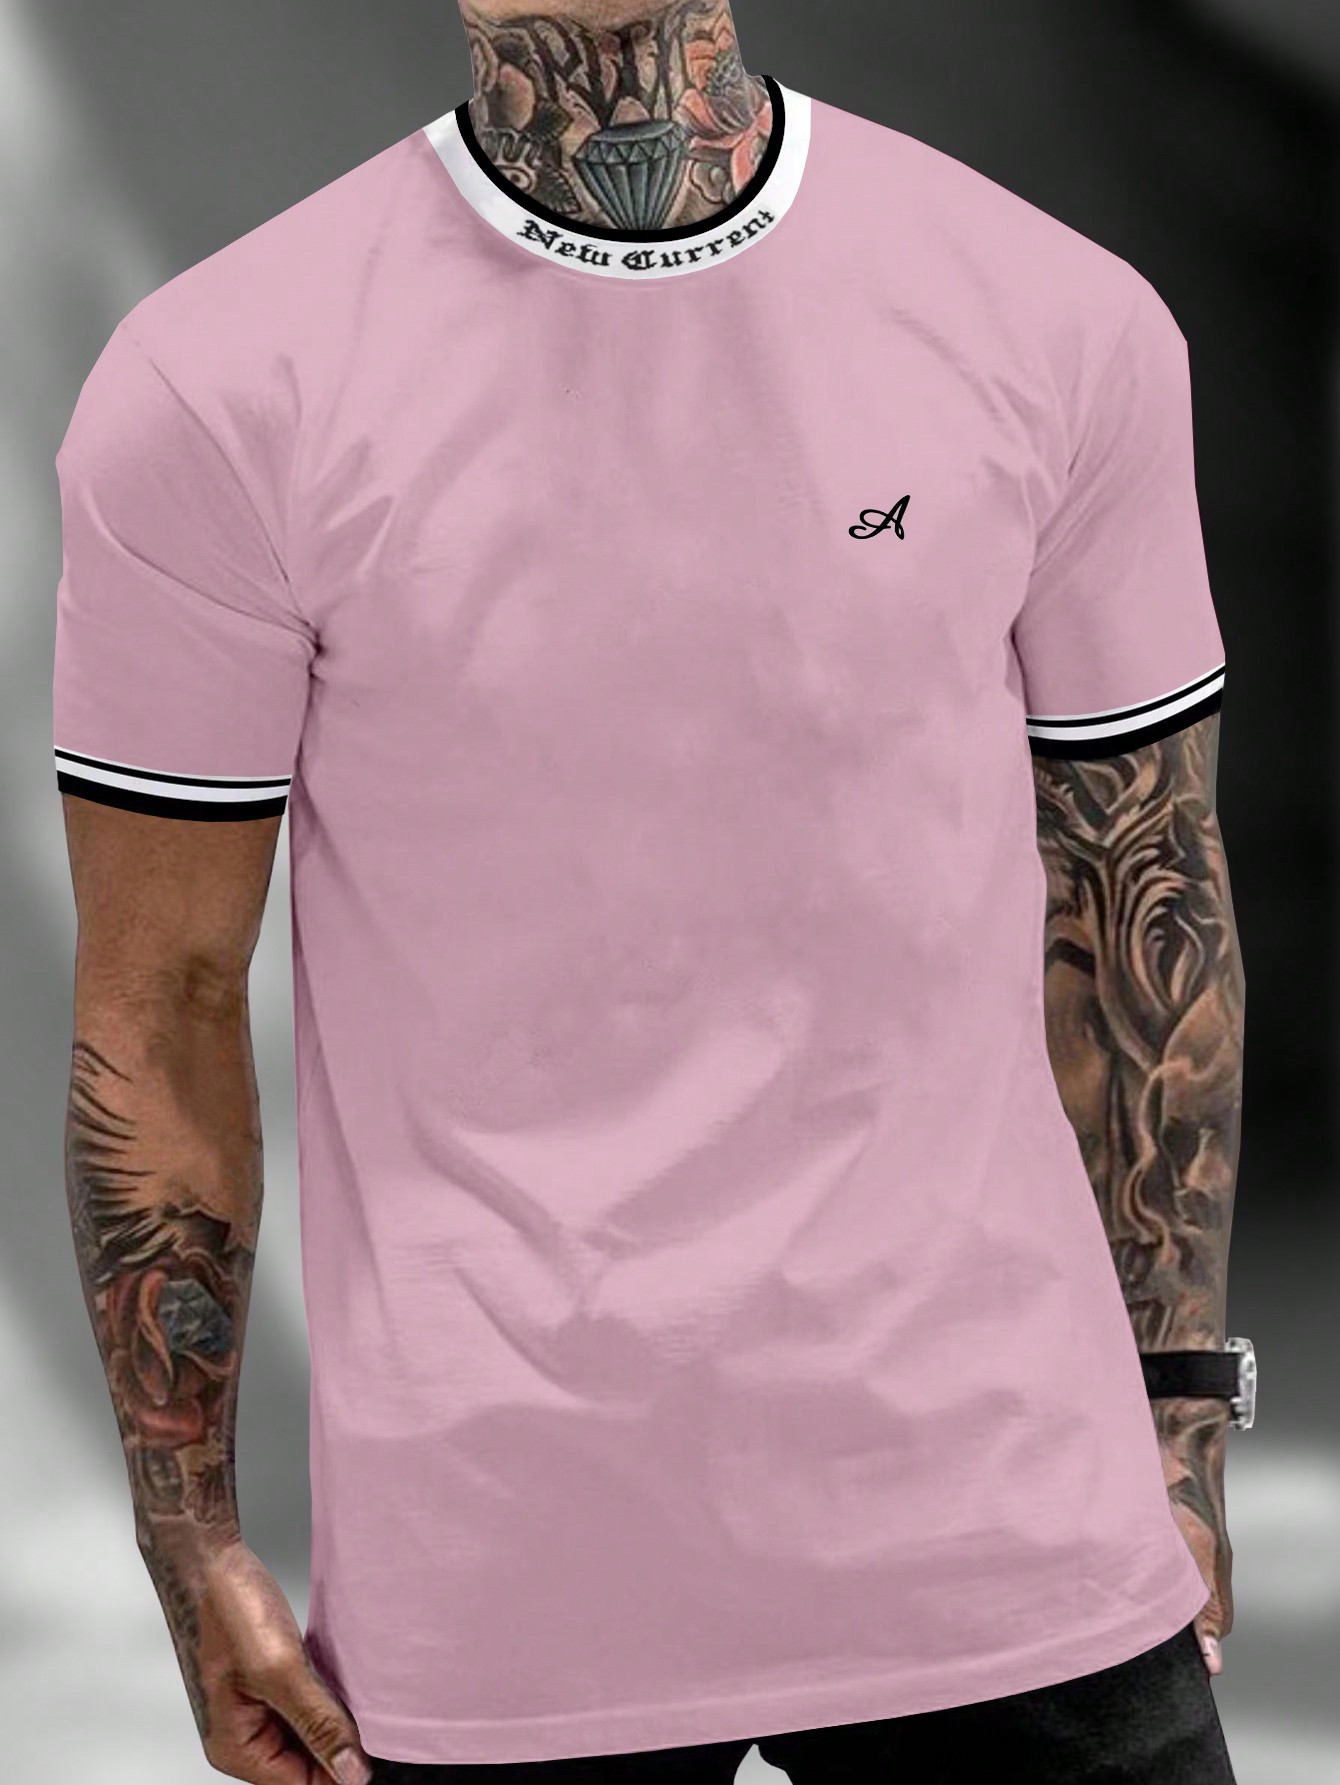 Мужская футболка с контрастным буквенным принтом Manfinity Homme и декоративной окантовкой, розовый футболка мужская с контрастной отделкой madison 170 оранжевый белый размер xl